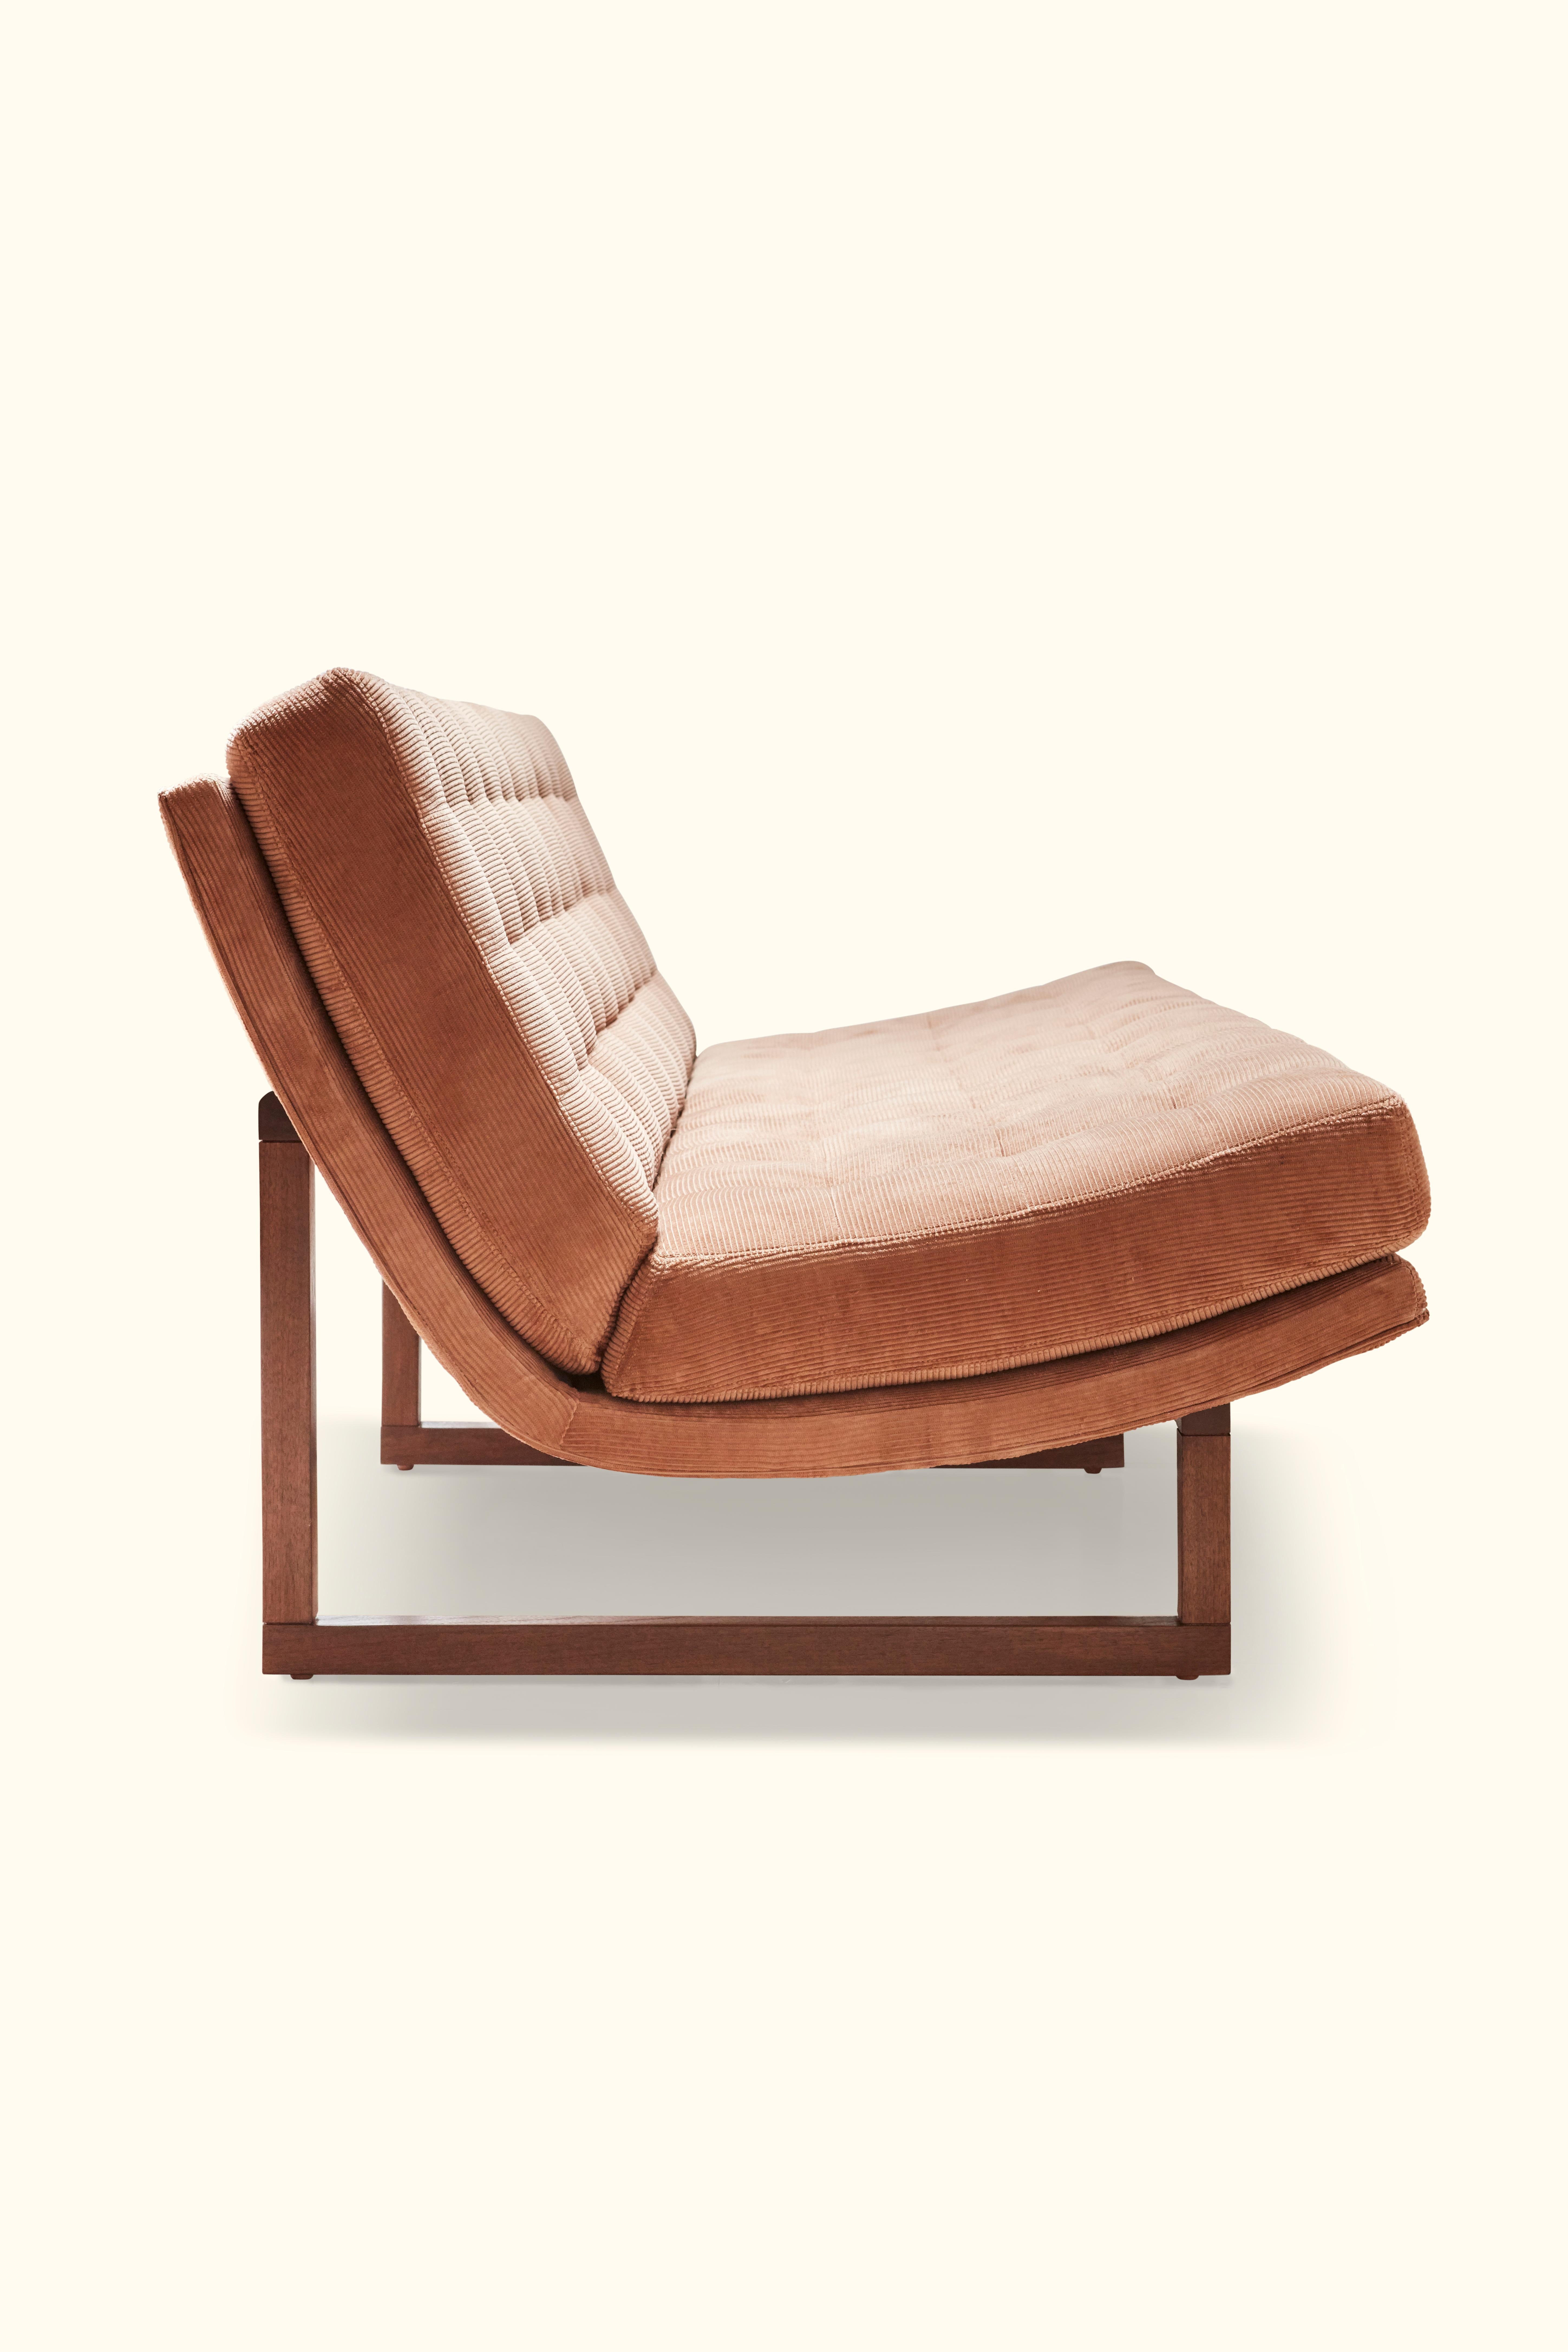 Mid-Century Modern Griffin Sofa by Lawson-Fenning